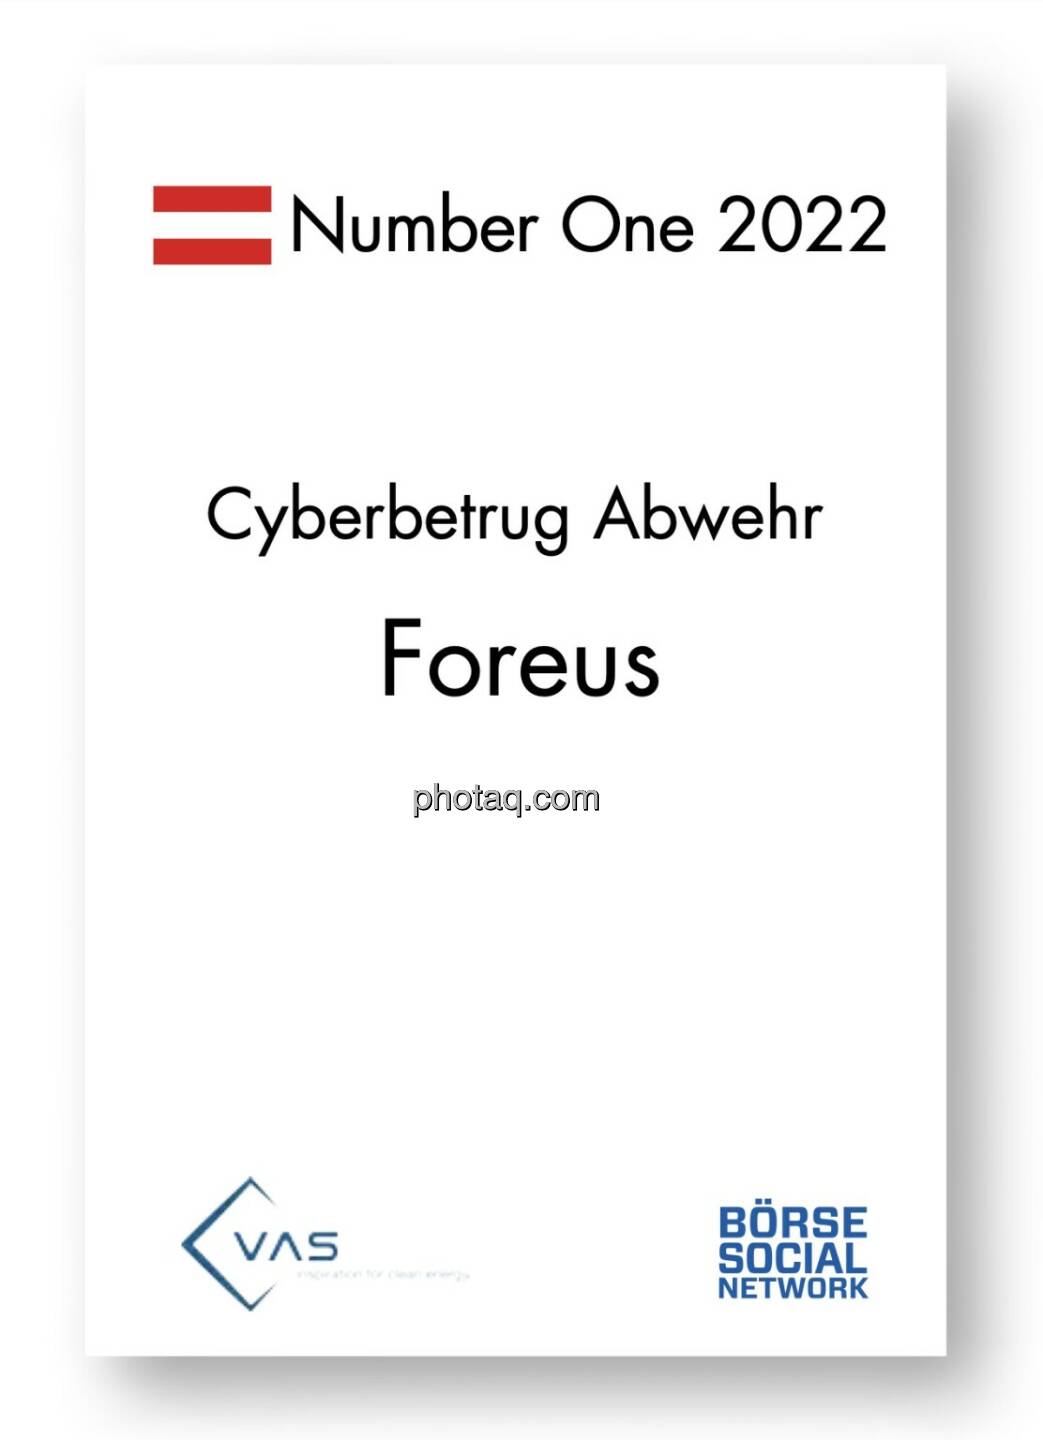 Number One Cybersicherheit: Foreus